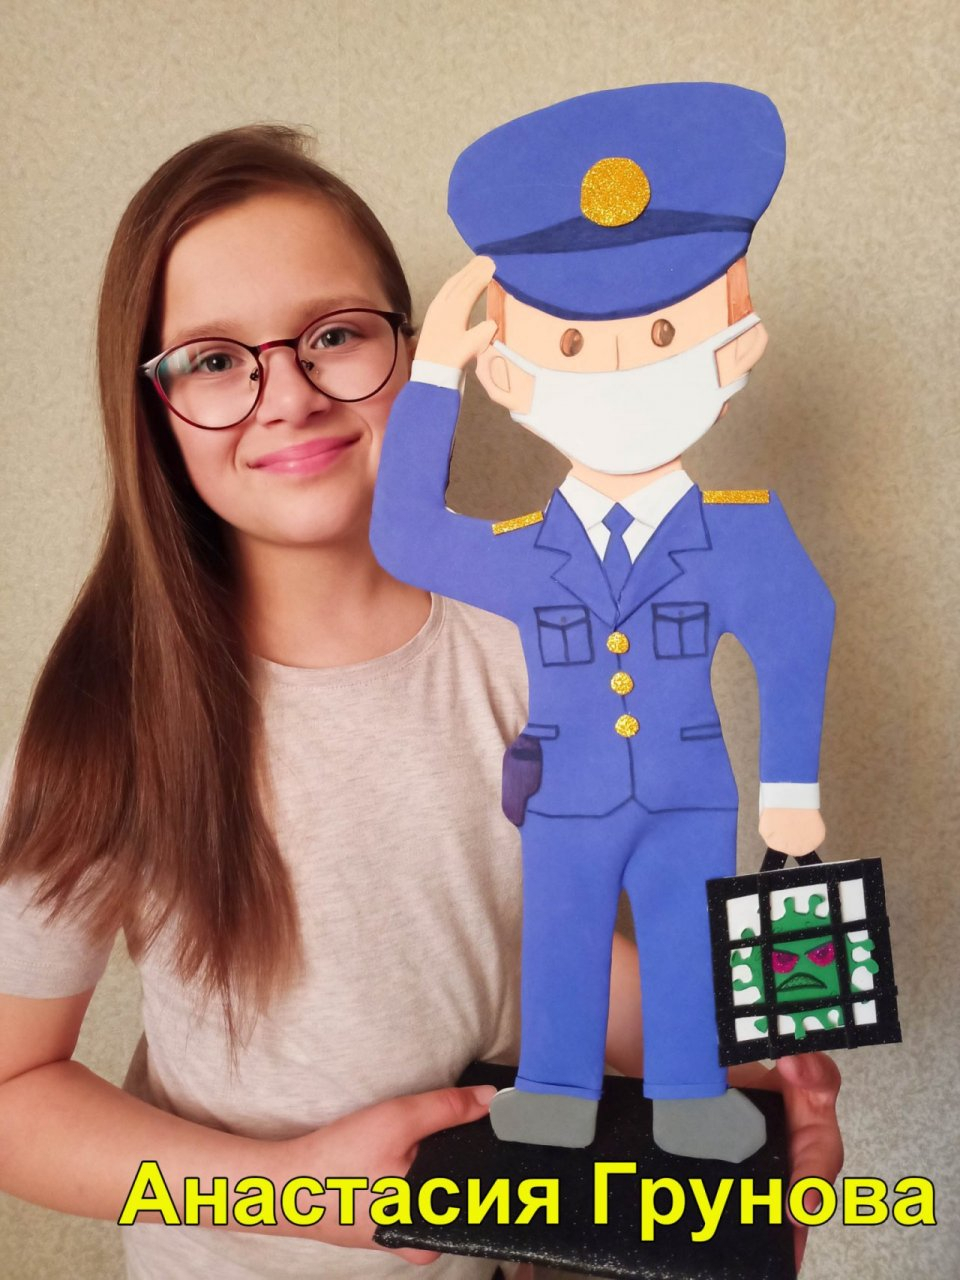 "Там ему и место": в Ярославле полицейский посадил коронавирус в тюрьму благодаря 10-летней девочке